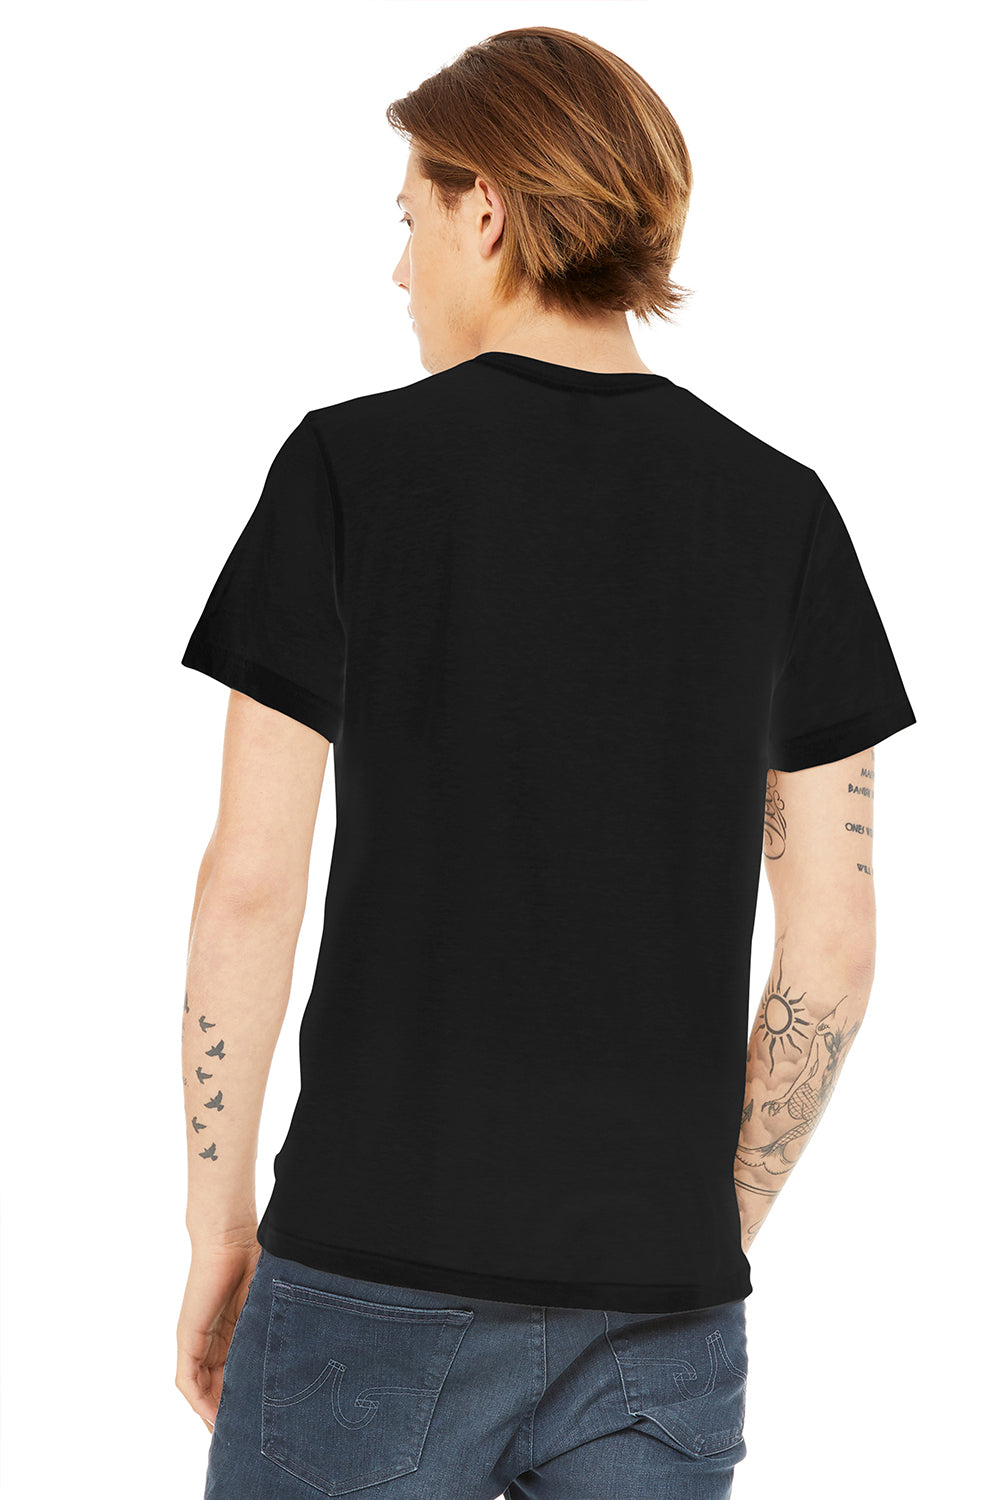 Bella + Canvas BC3650/3650 Mens Short Sleeve Crewneck T-Shirt Black Model Back